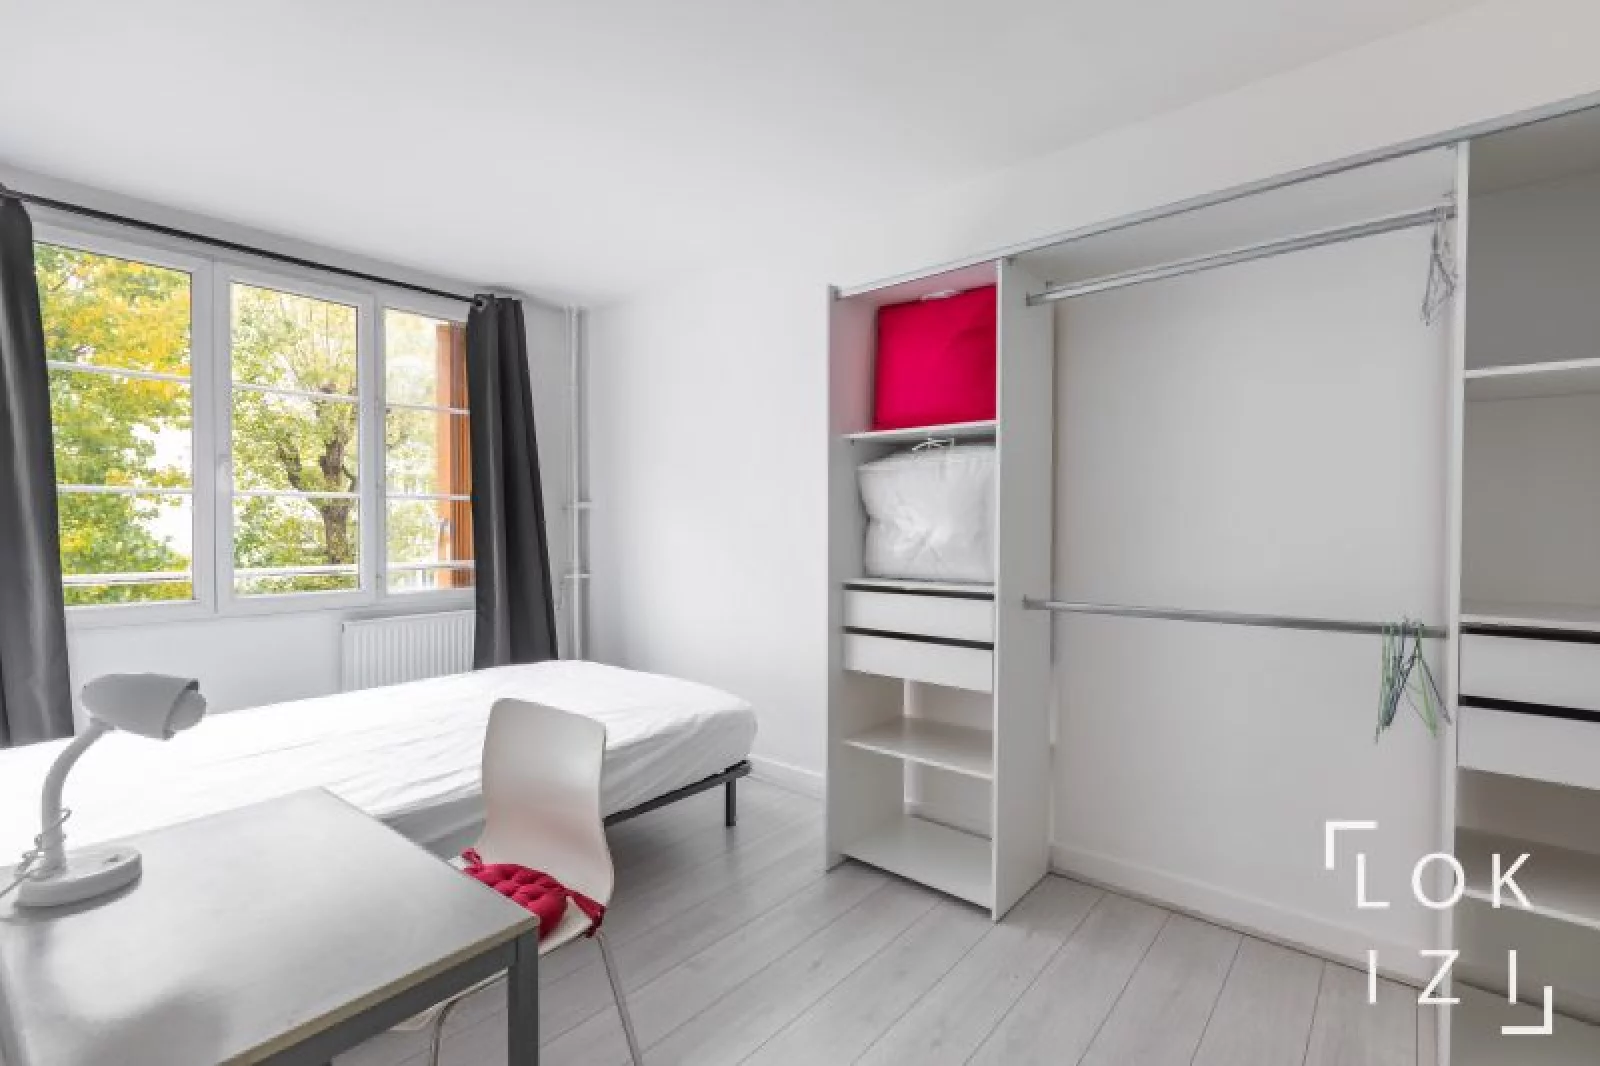 Location appartement meublé 2 pièces 36 m² (Issy-les-Moulineaux / Paris Sud-Ouest)